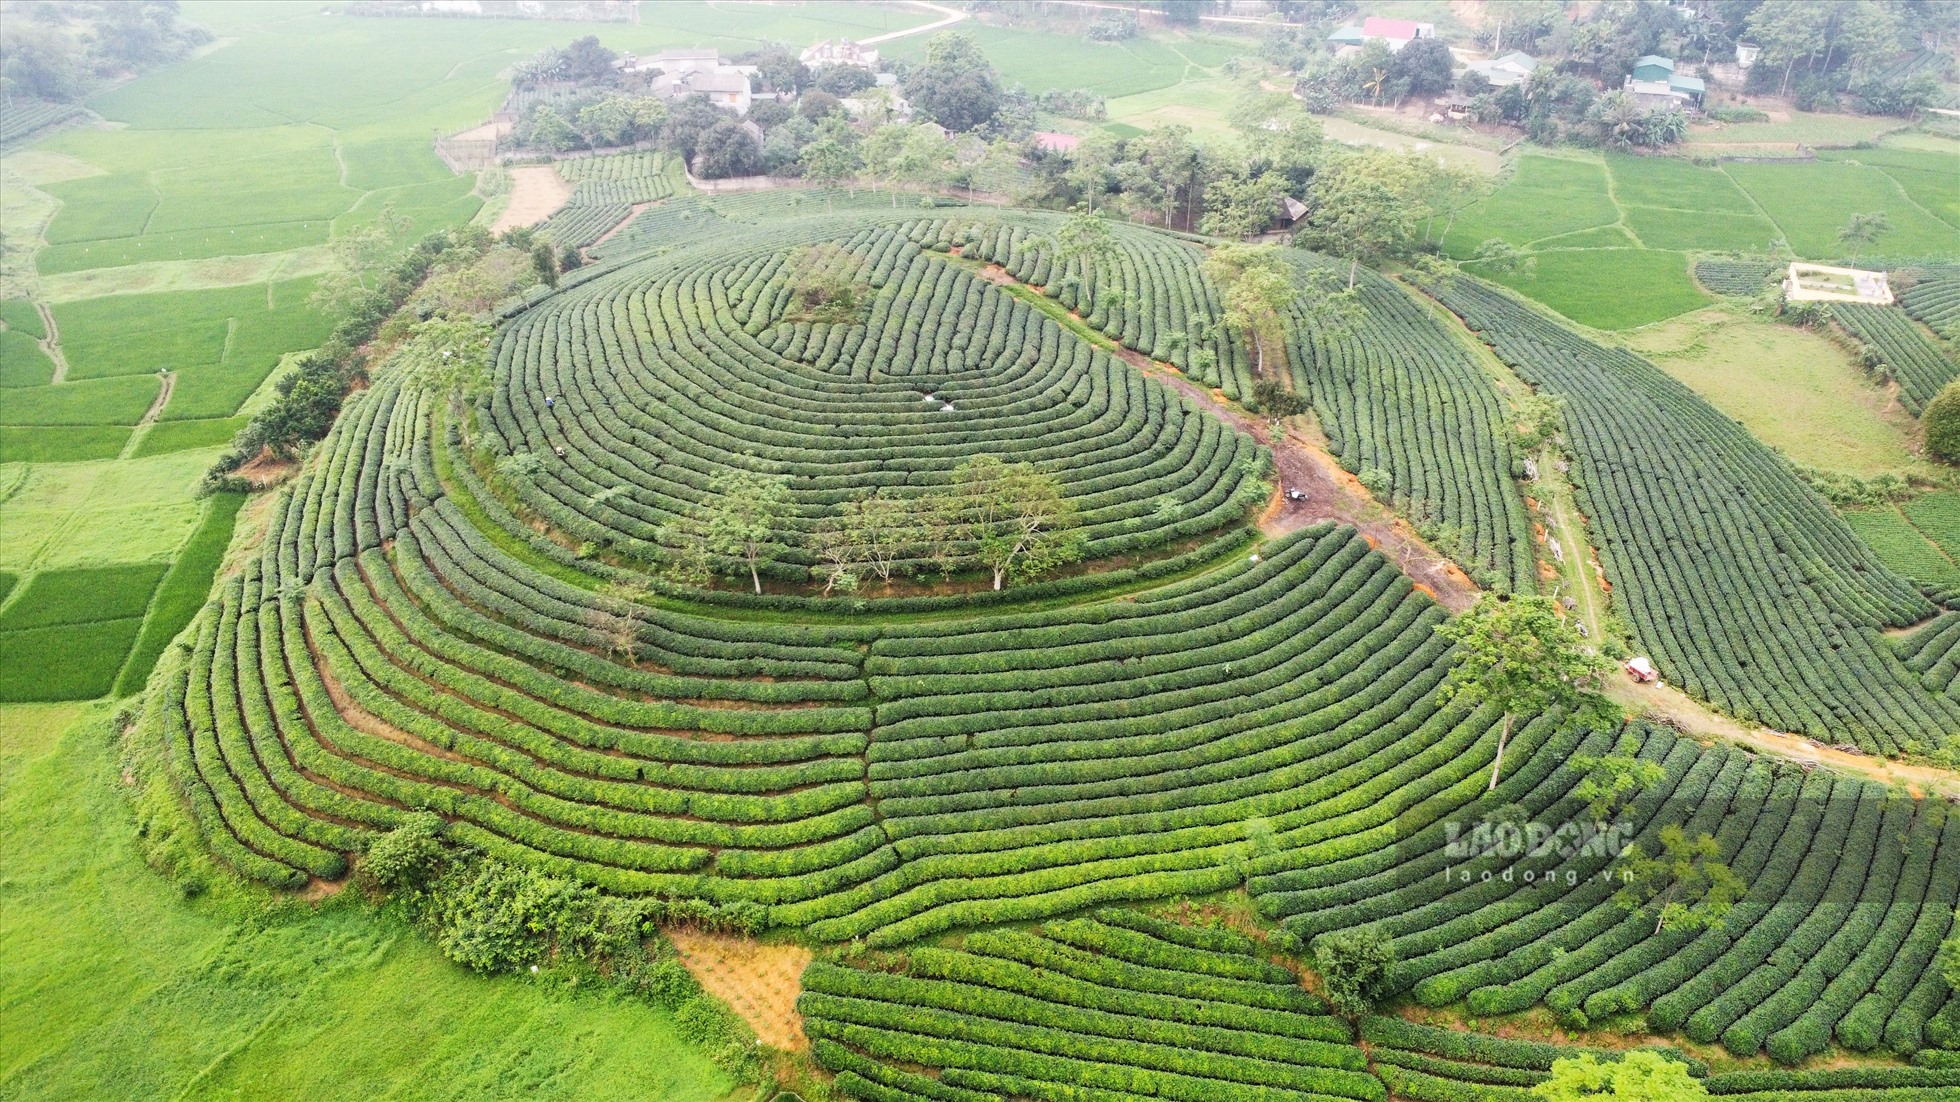 Những đồi chè xanh ở Mỹ Bằng (huyện Yên Sơn) một trong số các vùng chuyên sản xuất chè của tỉnh Tuyên Quang, với hình thù độc đáo, mang vẻ đẹp của thiên nhiên được người nông dân tốn nhiều năm để chăm sóc, tạo hình.